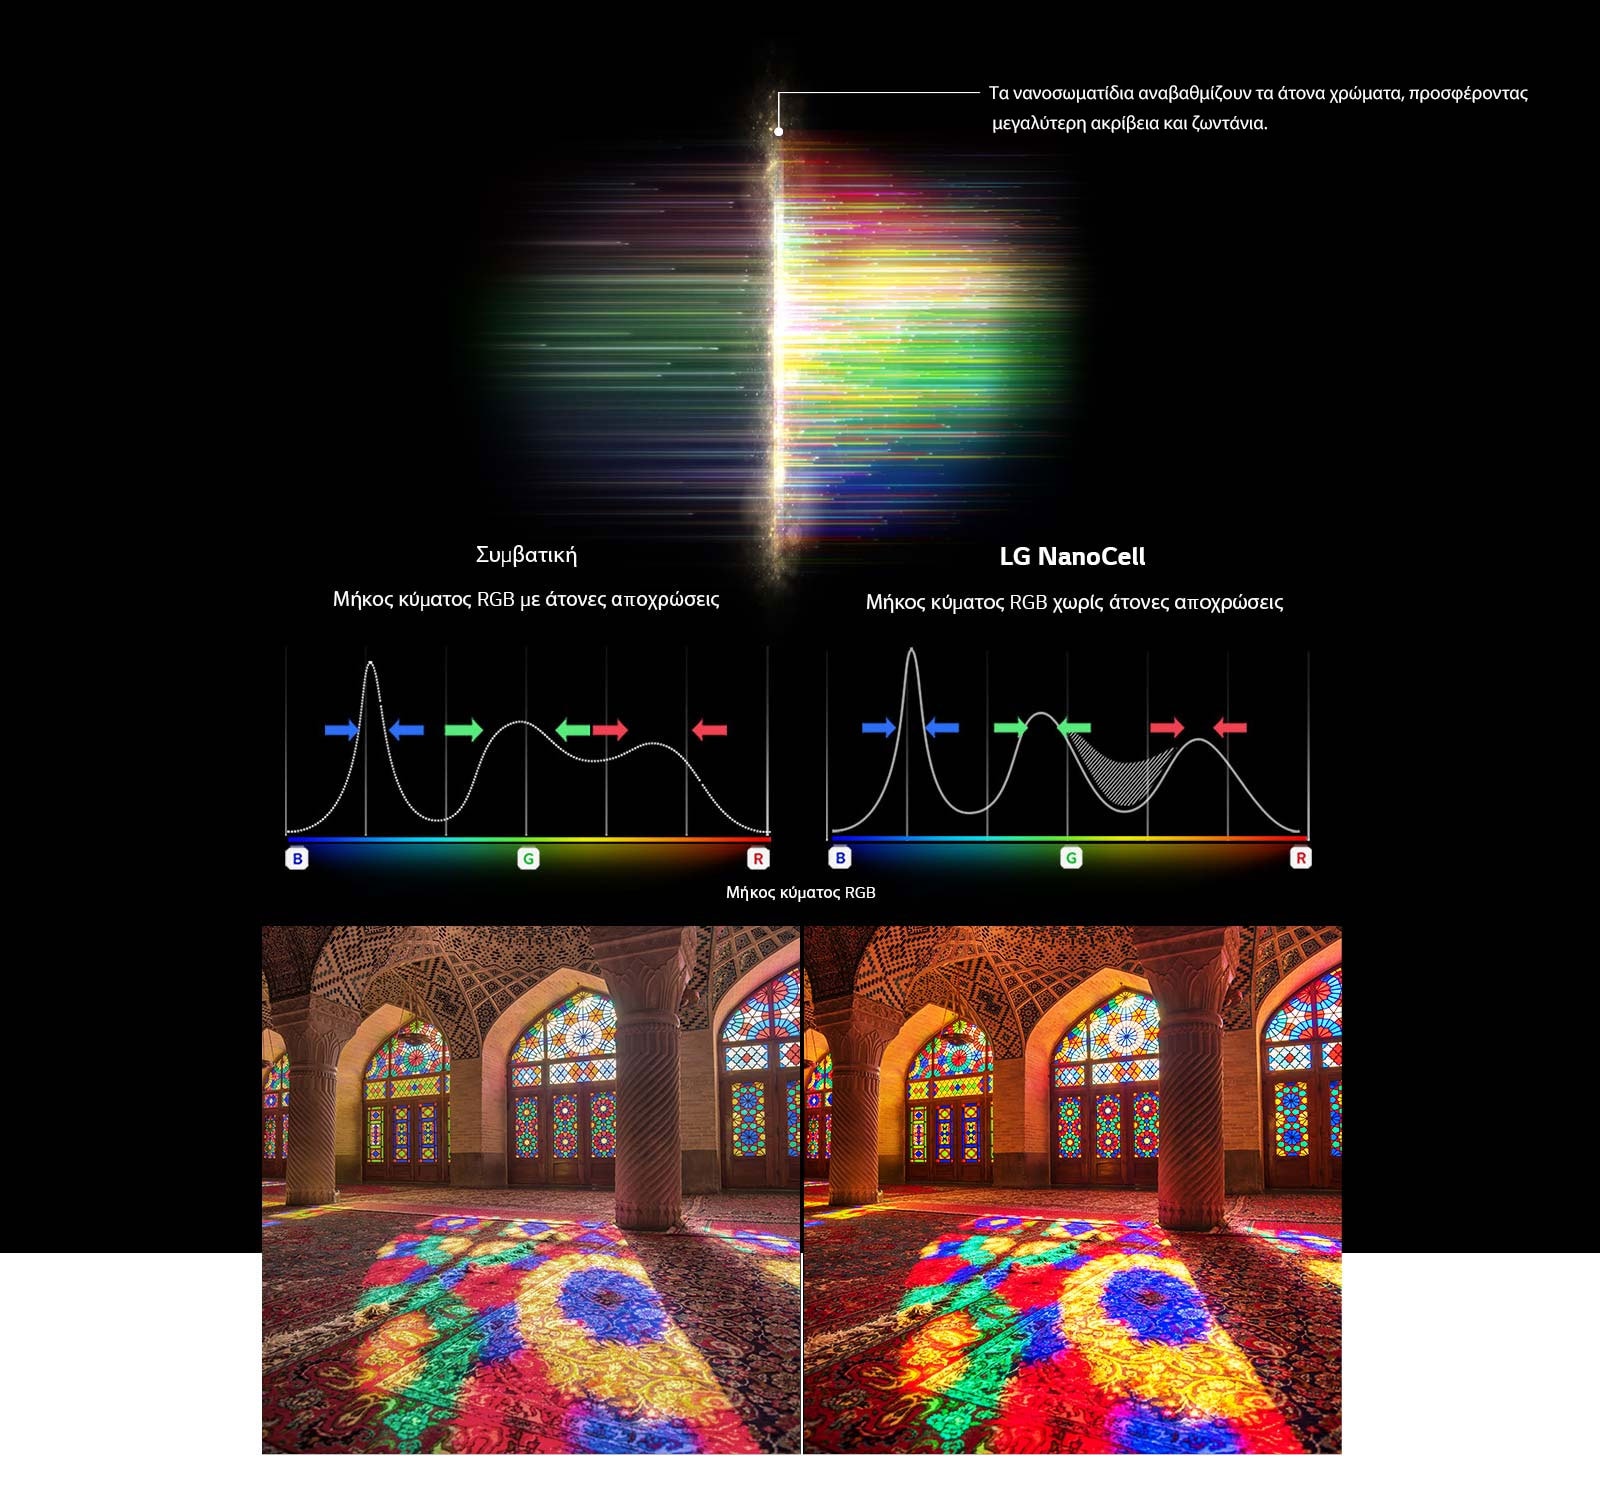 Το γράφημα απεικονίζει τη λειτουργία απομάκρυνσης των άτονων χρωματισμών της τεχνολογία NanoCell, συγκρίνοντας την καθαρότητα του φάσματος RGB με το αντίστοιχο μίας συμβατικής τηλεόρασης